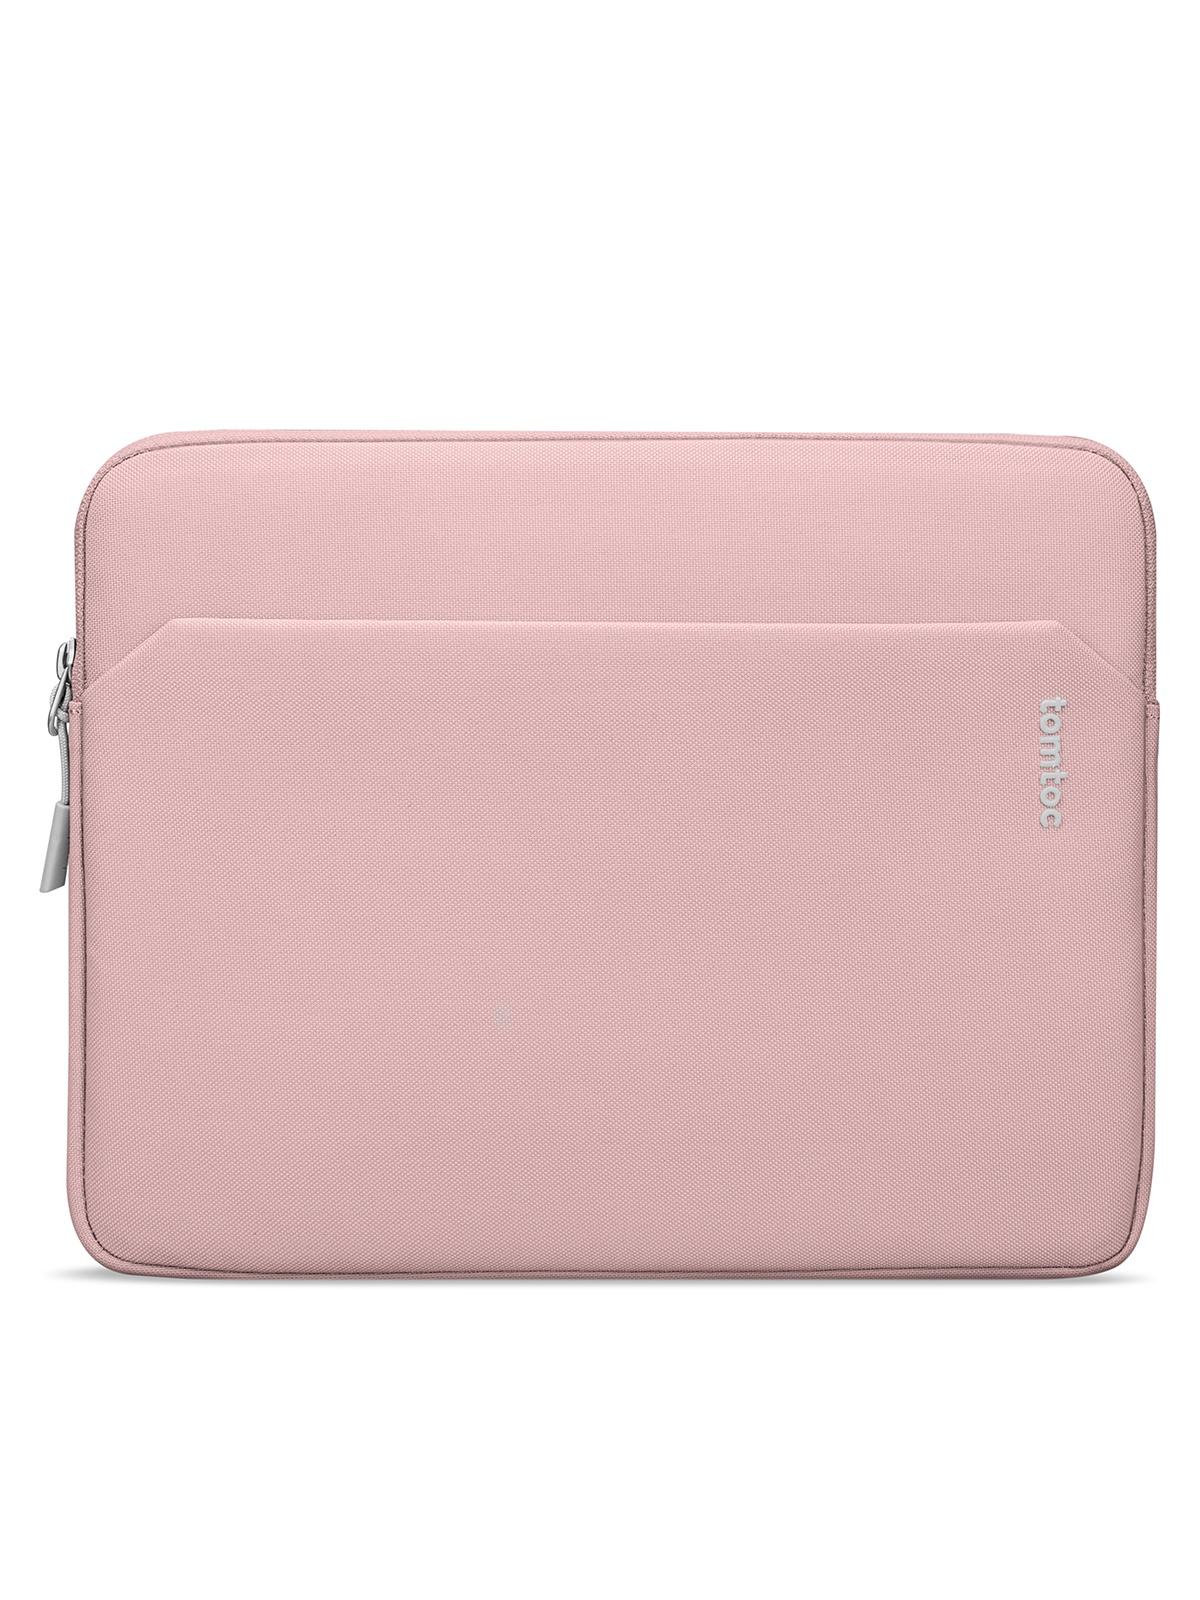 Чехол Tomtoc для планшета iPad Pro 12.9 ударопрочный, розовый